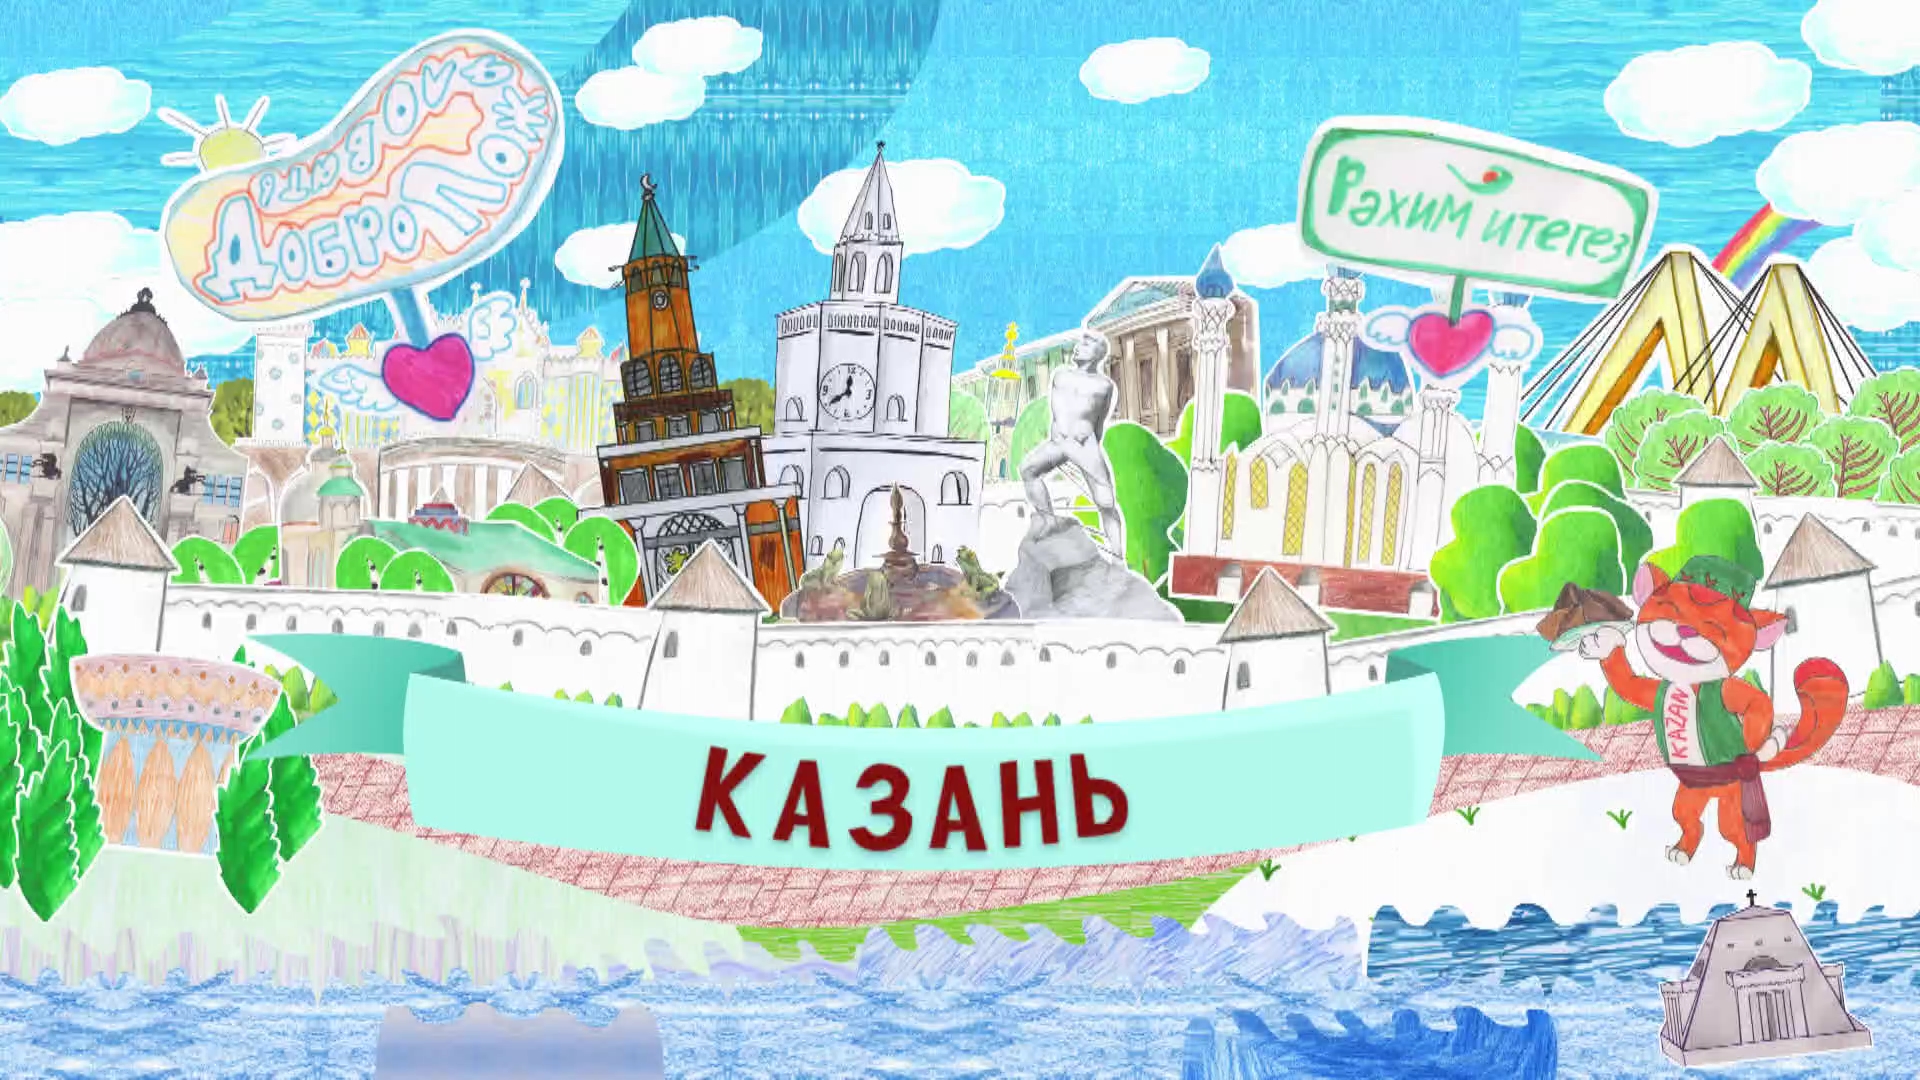 Казань рисунок для детей